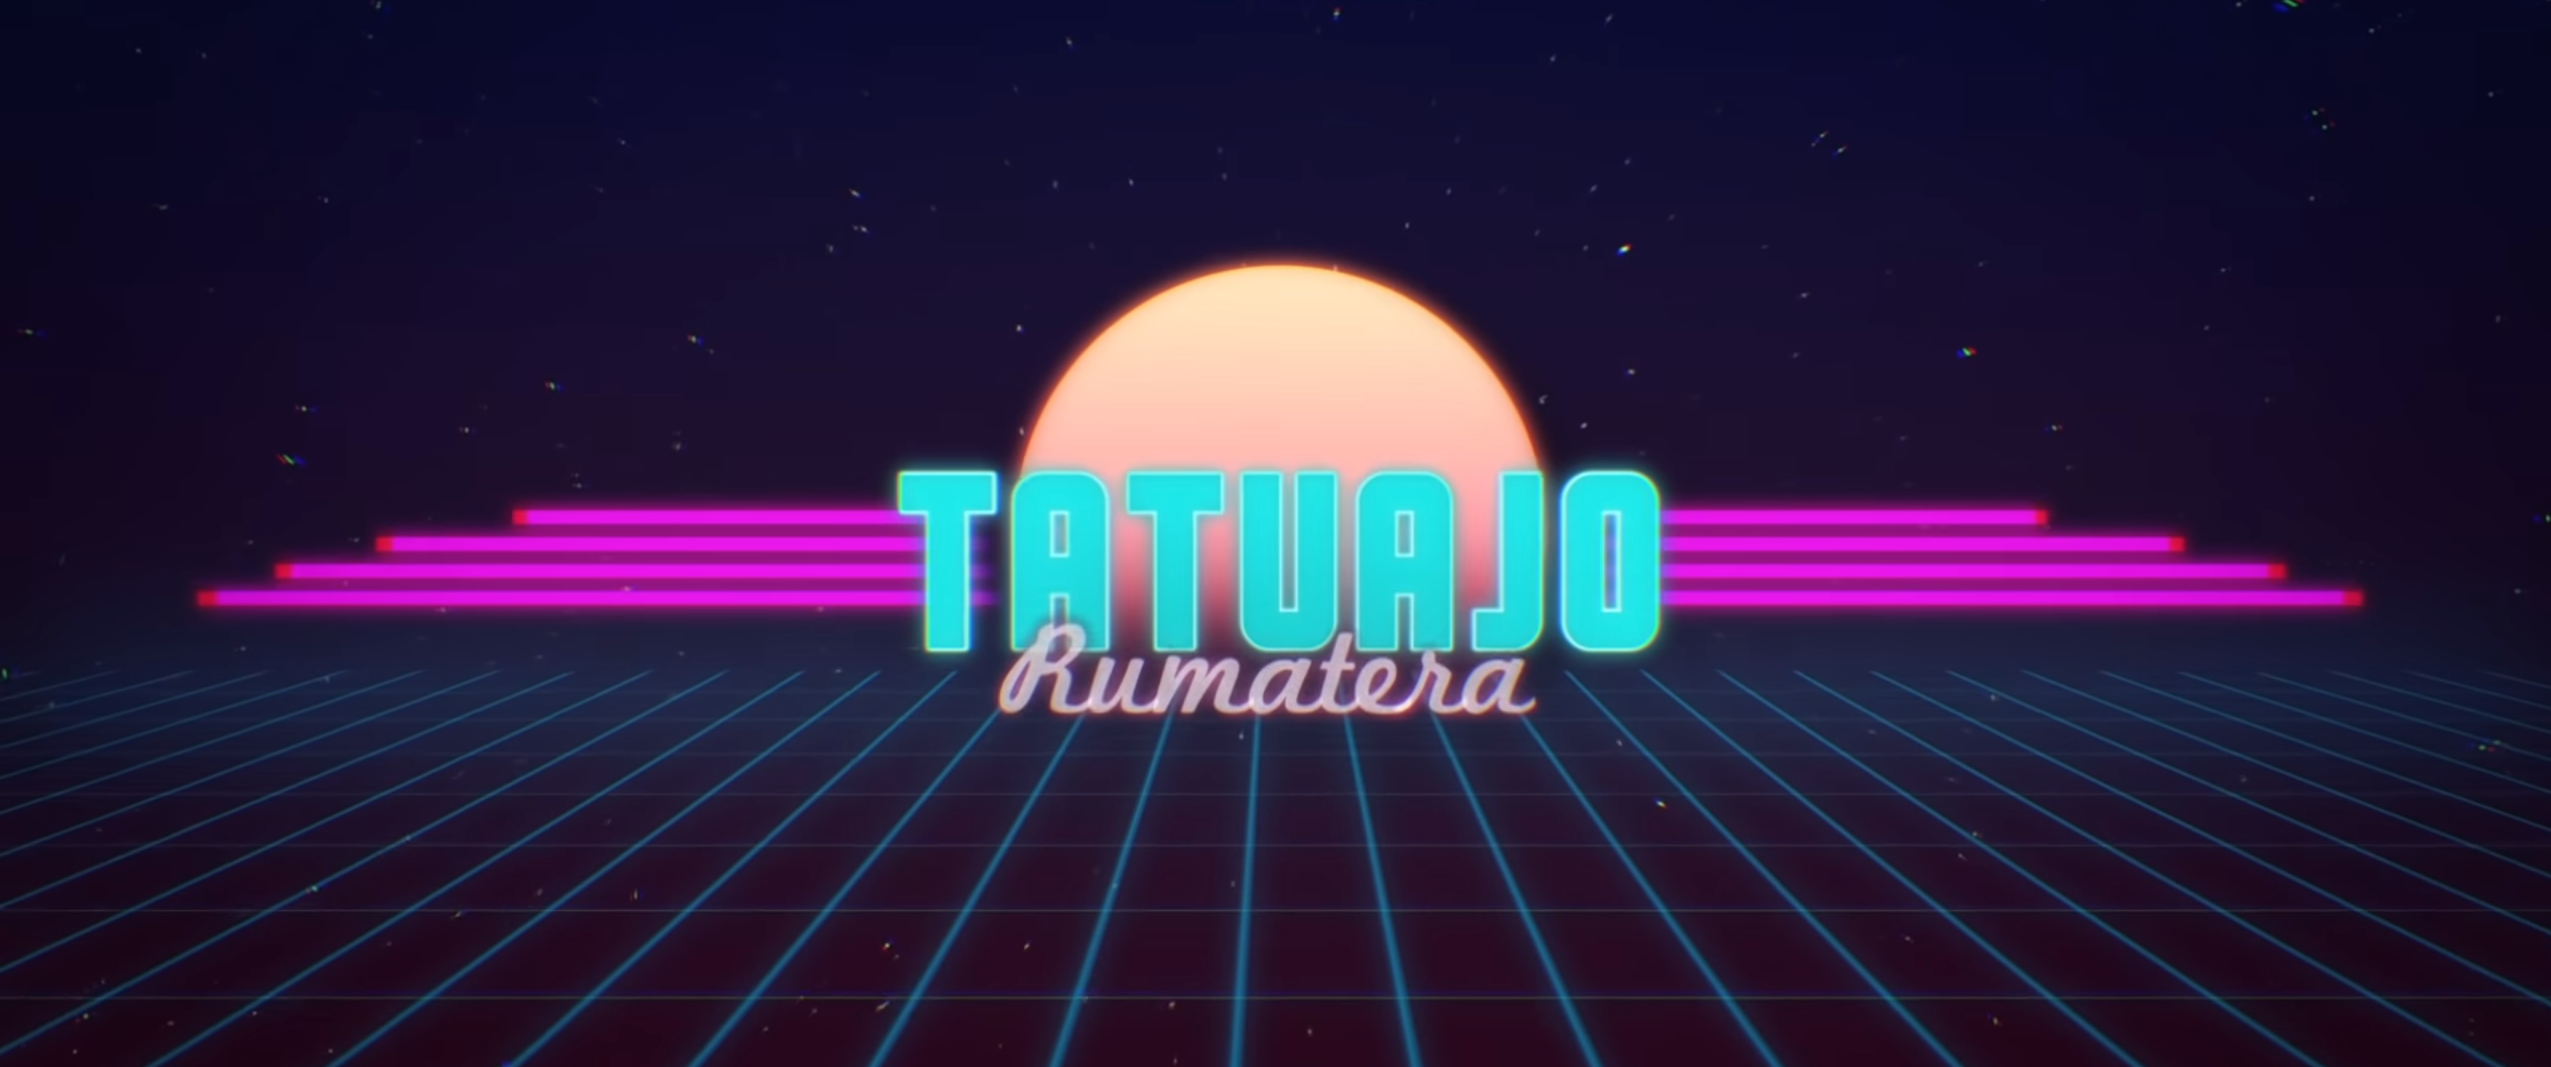 Rumatera Tatuajo